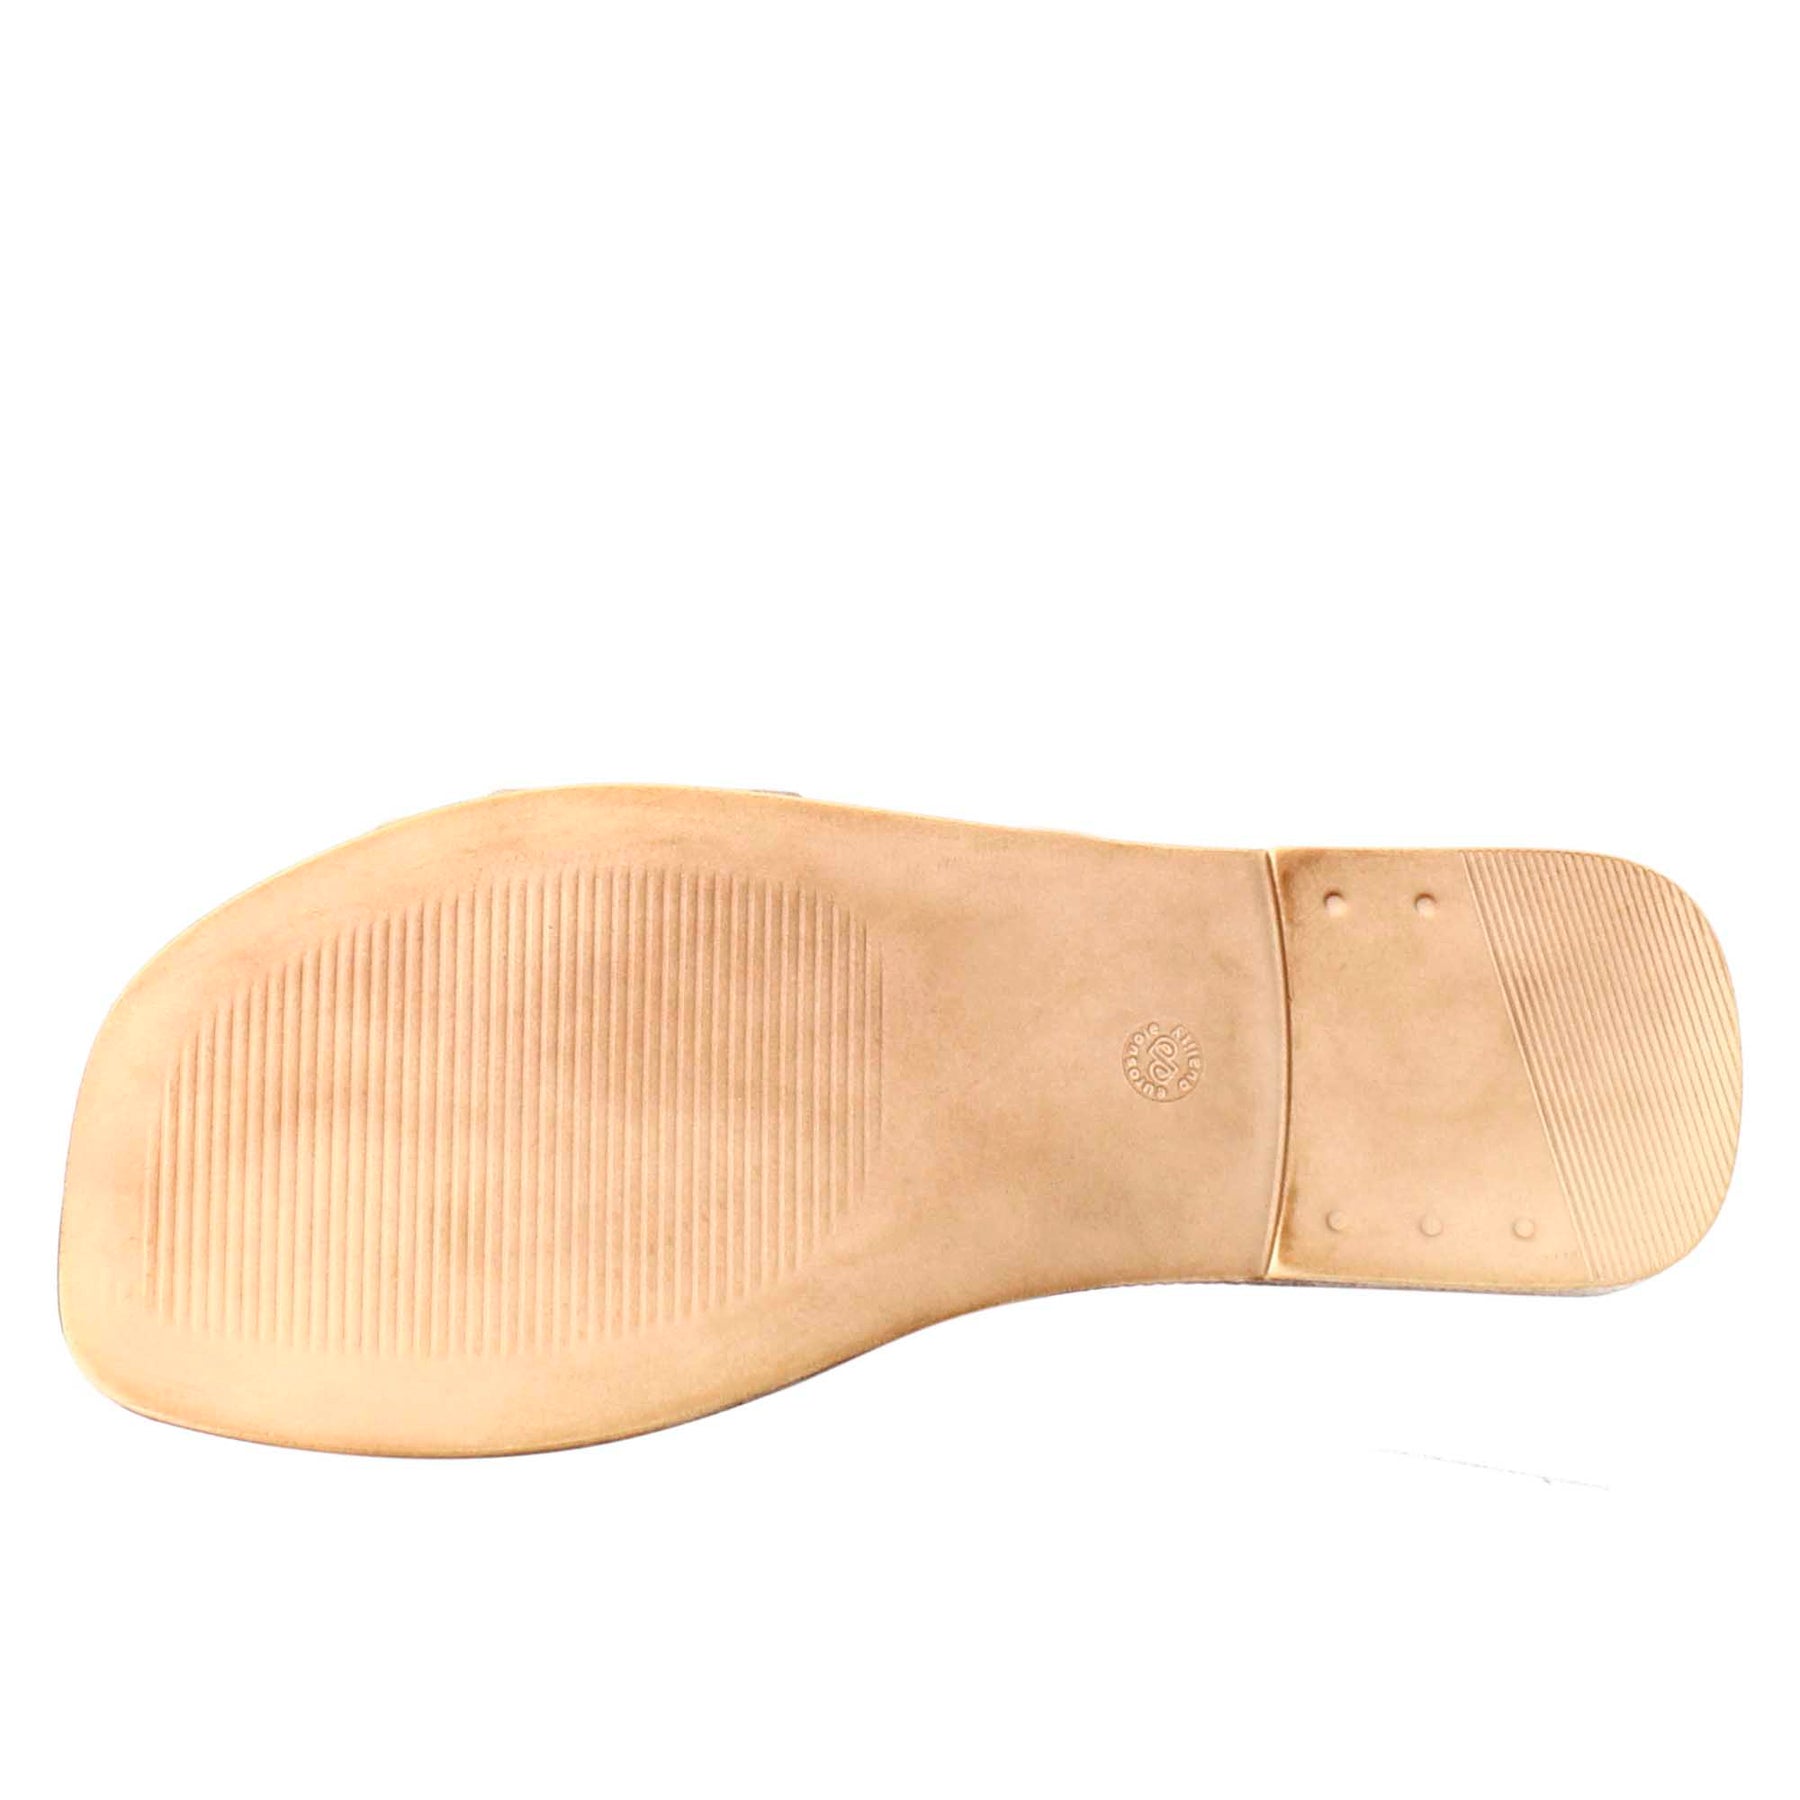 Sandalo basso da donna in pelle scamosciata beige